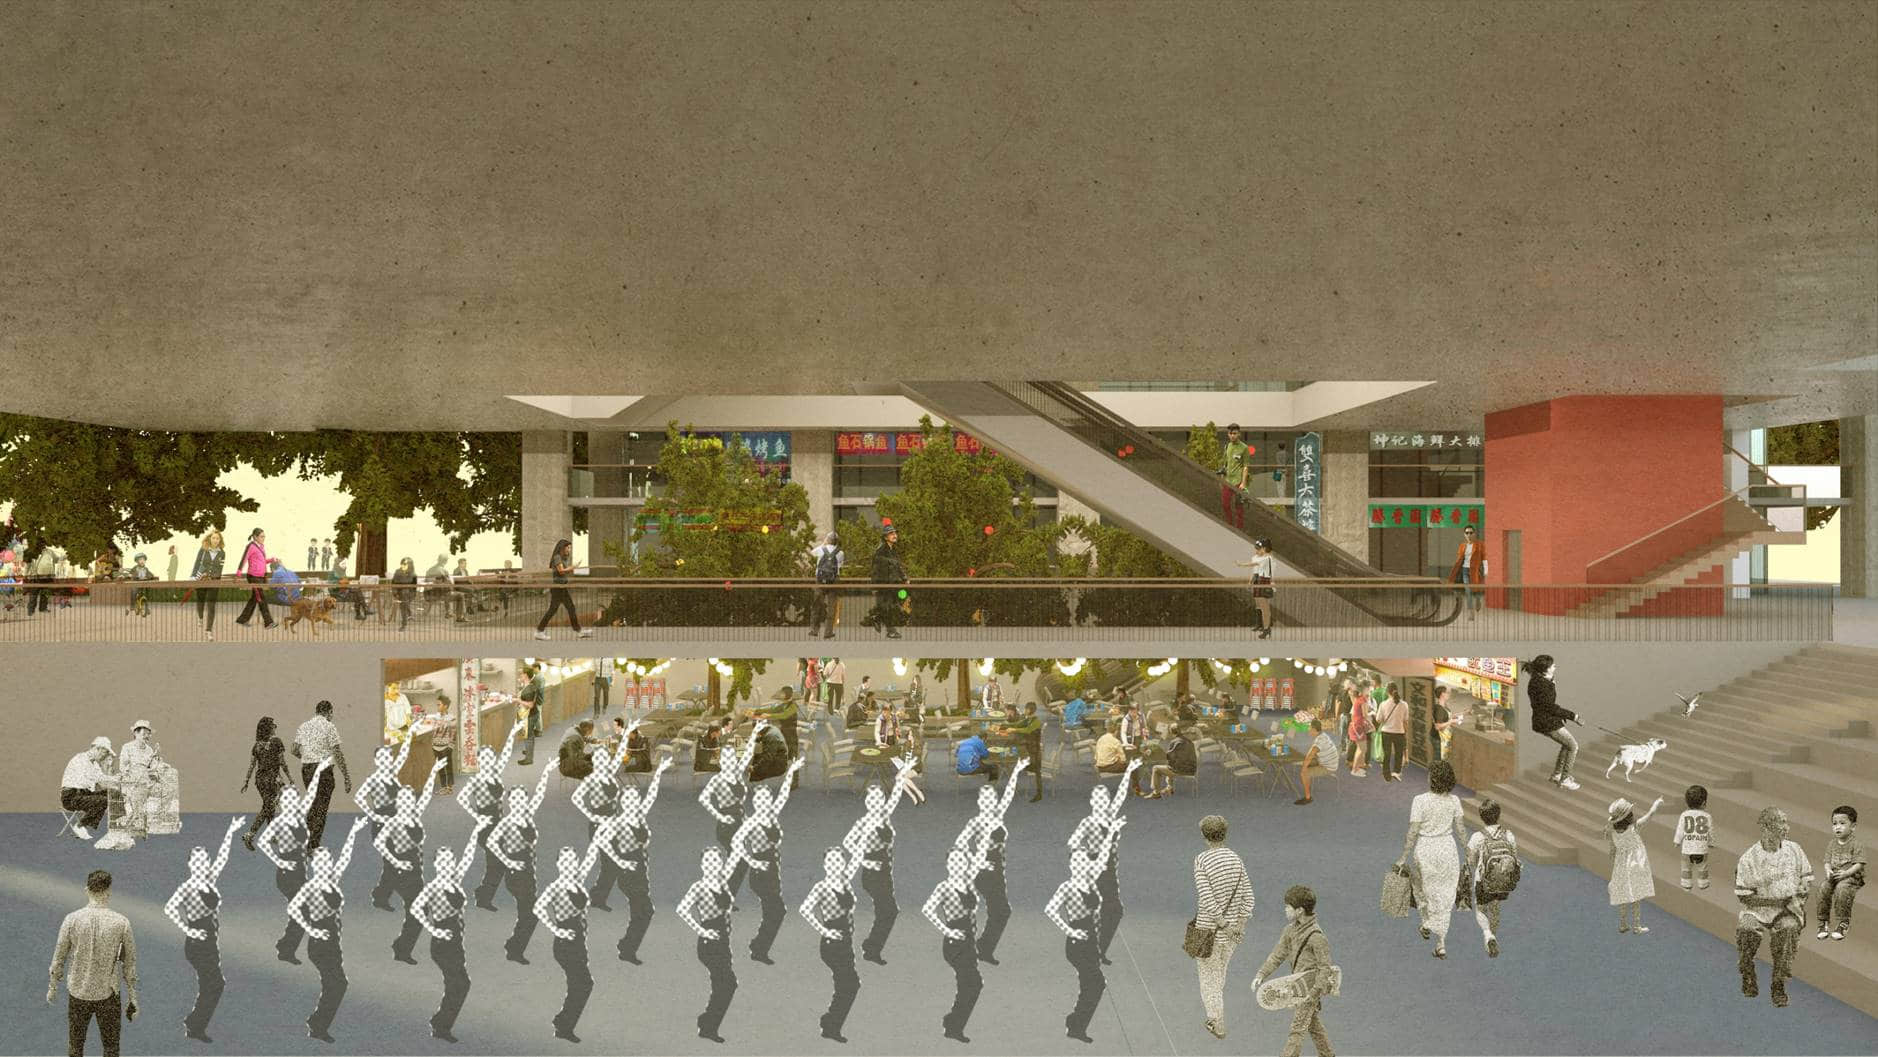 香港市政大厦研究及深圳市政大厦概念设计（朱涛建筑工作室，2020）  ——“深港双城记”：工作室与香港大学中国建筑与城市研究中心长期合作，通过课题研究、学术交流、项目策划和设计实践，推动深港两地的空间文化互动。工作室尤其重视梳理和引介香港的城市管理、公共空间营造和公众服务经验，以协助深圳和粤港澳大湾区的城市发展。